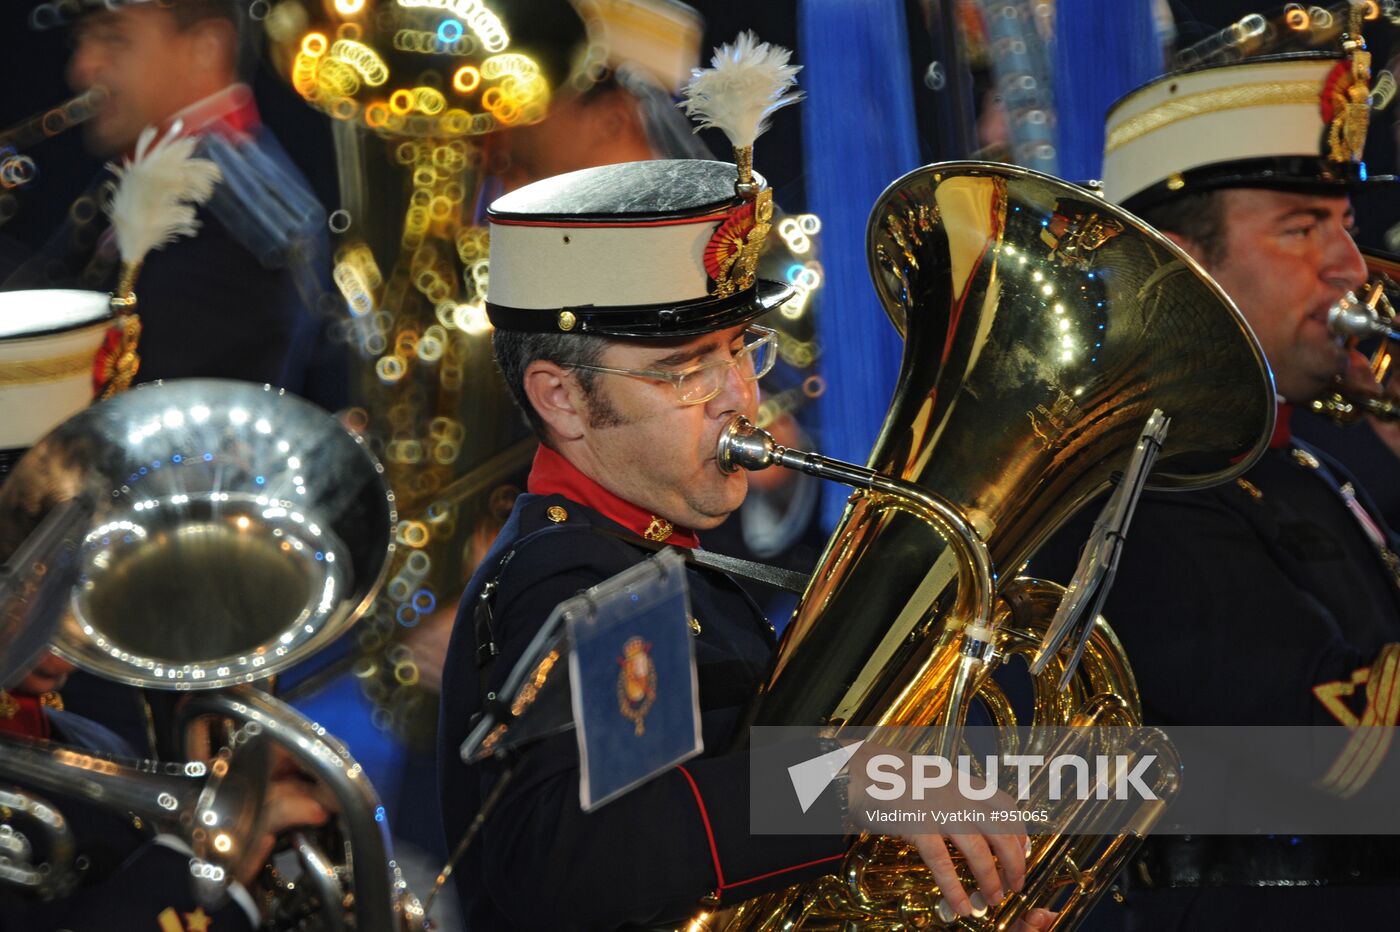 Full rehearsal of Spasskaya Tower 2011 Festival